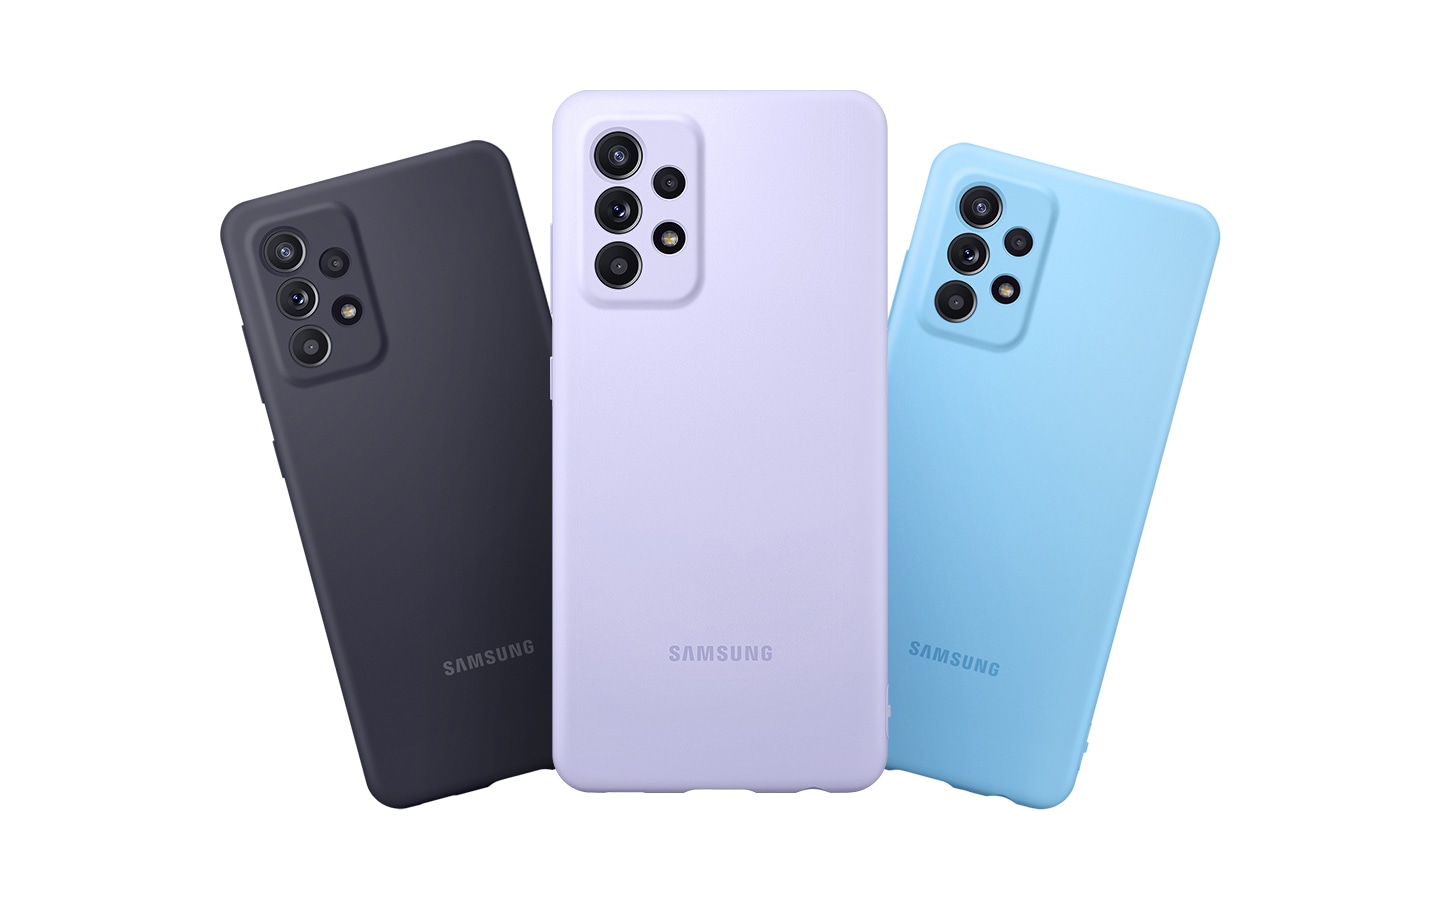 Man sieht drei Galaxy A52 | A52 5G im Silicone Cover, die übereinander gereiht sind. Sie werden von hinten mit Blick auf die Hauptkamera gezeigt, wobei die Farben des Silicone Cover Black, Violet, Blue zu sehen sind.